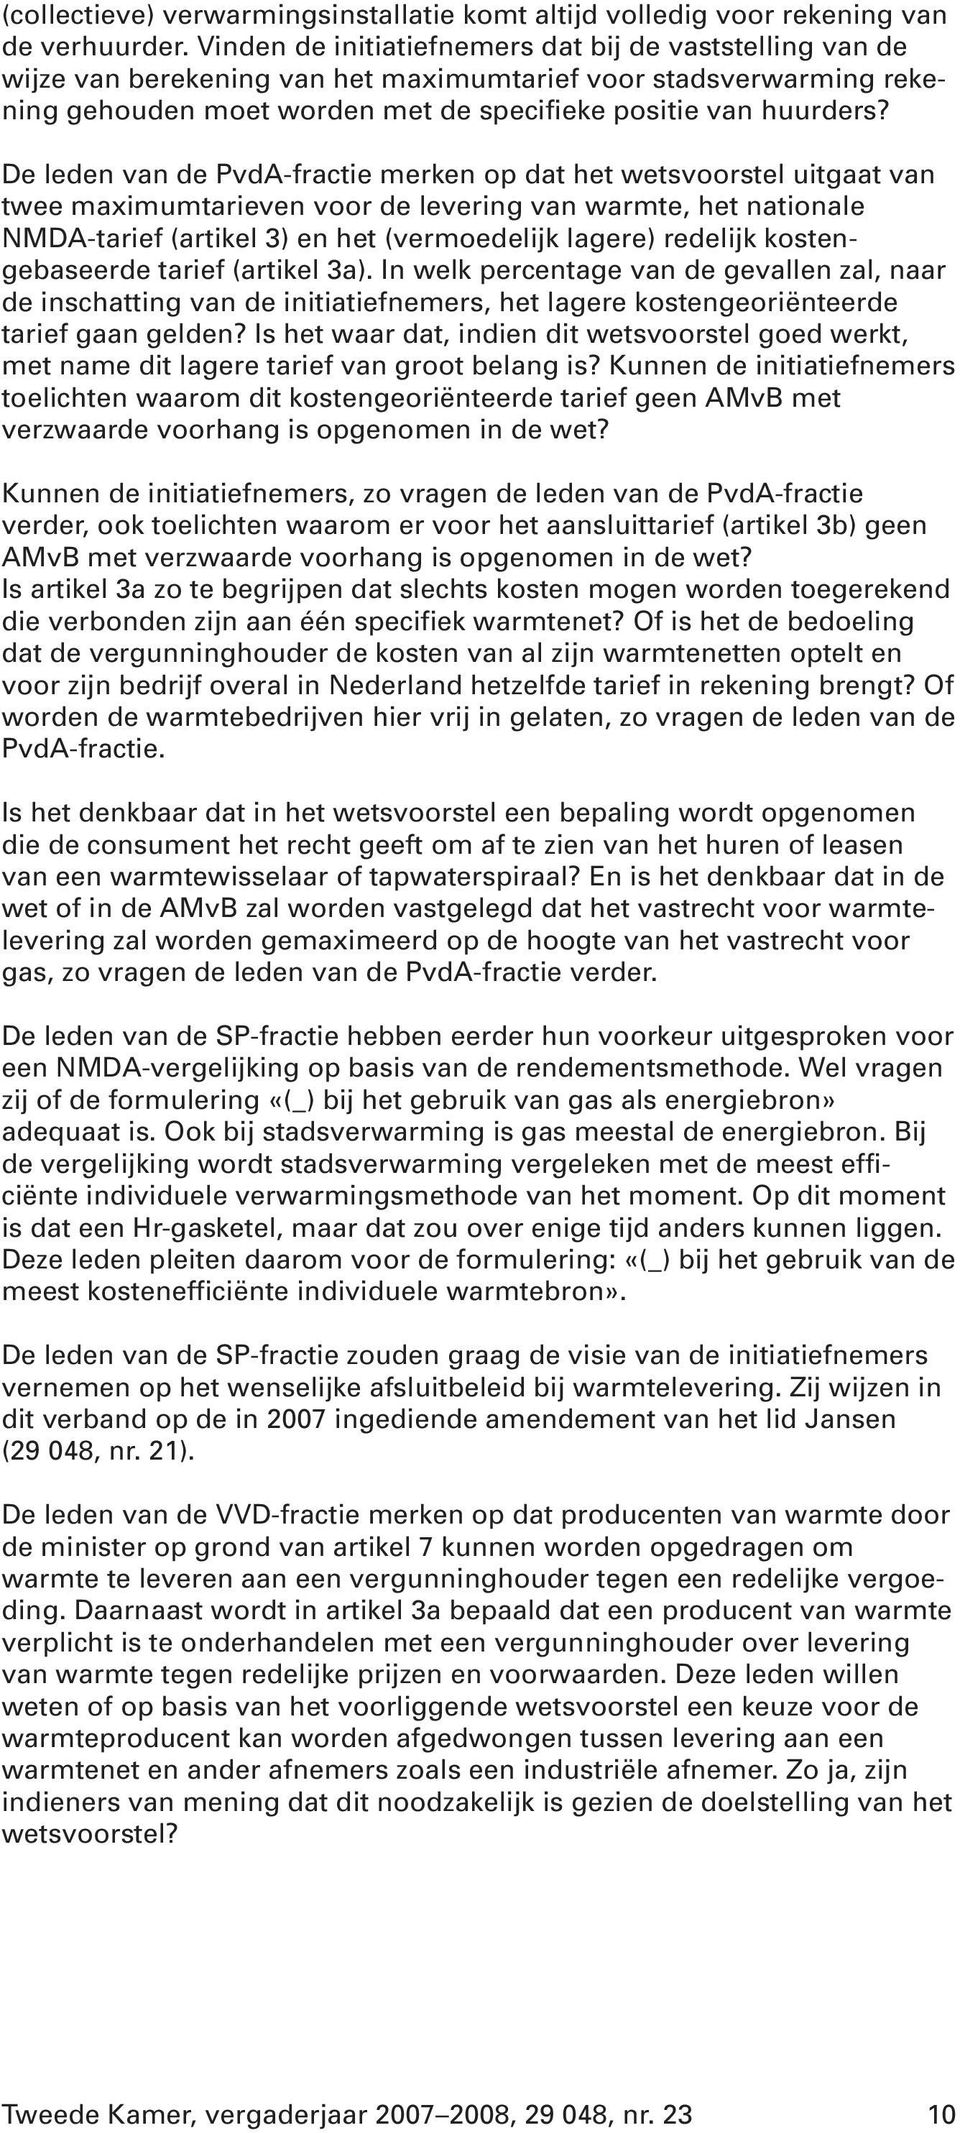 De leden van de PvdA-fractie merken op dat het wetsvoorstel uitgaat van twee maximumtarieven voor de levering van warmte, het nationale NMDA-tarief (artikel 3) en het (vermoedelijk lagere) redelijk